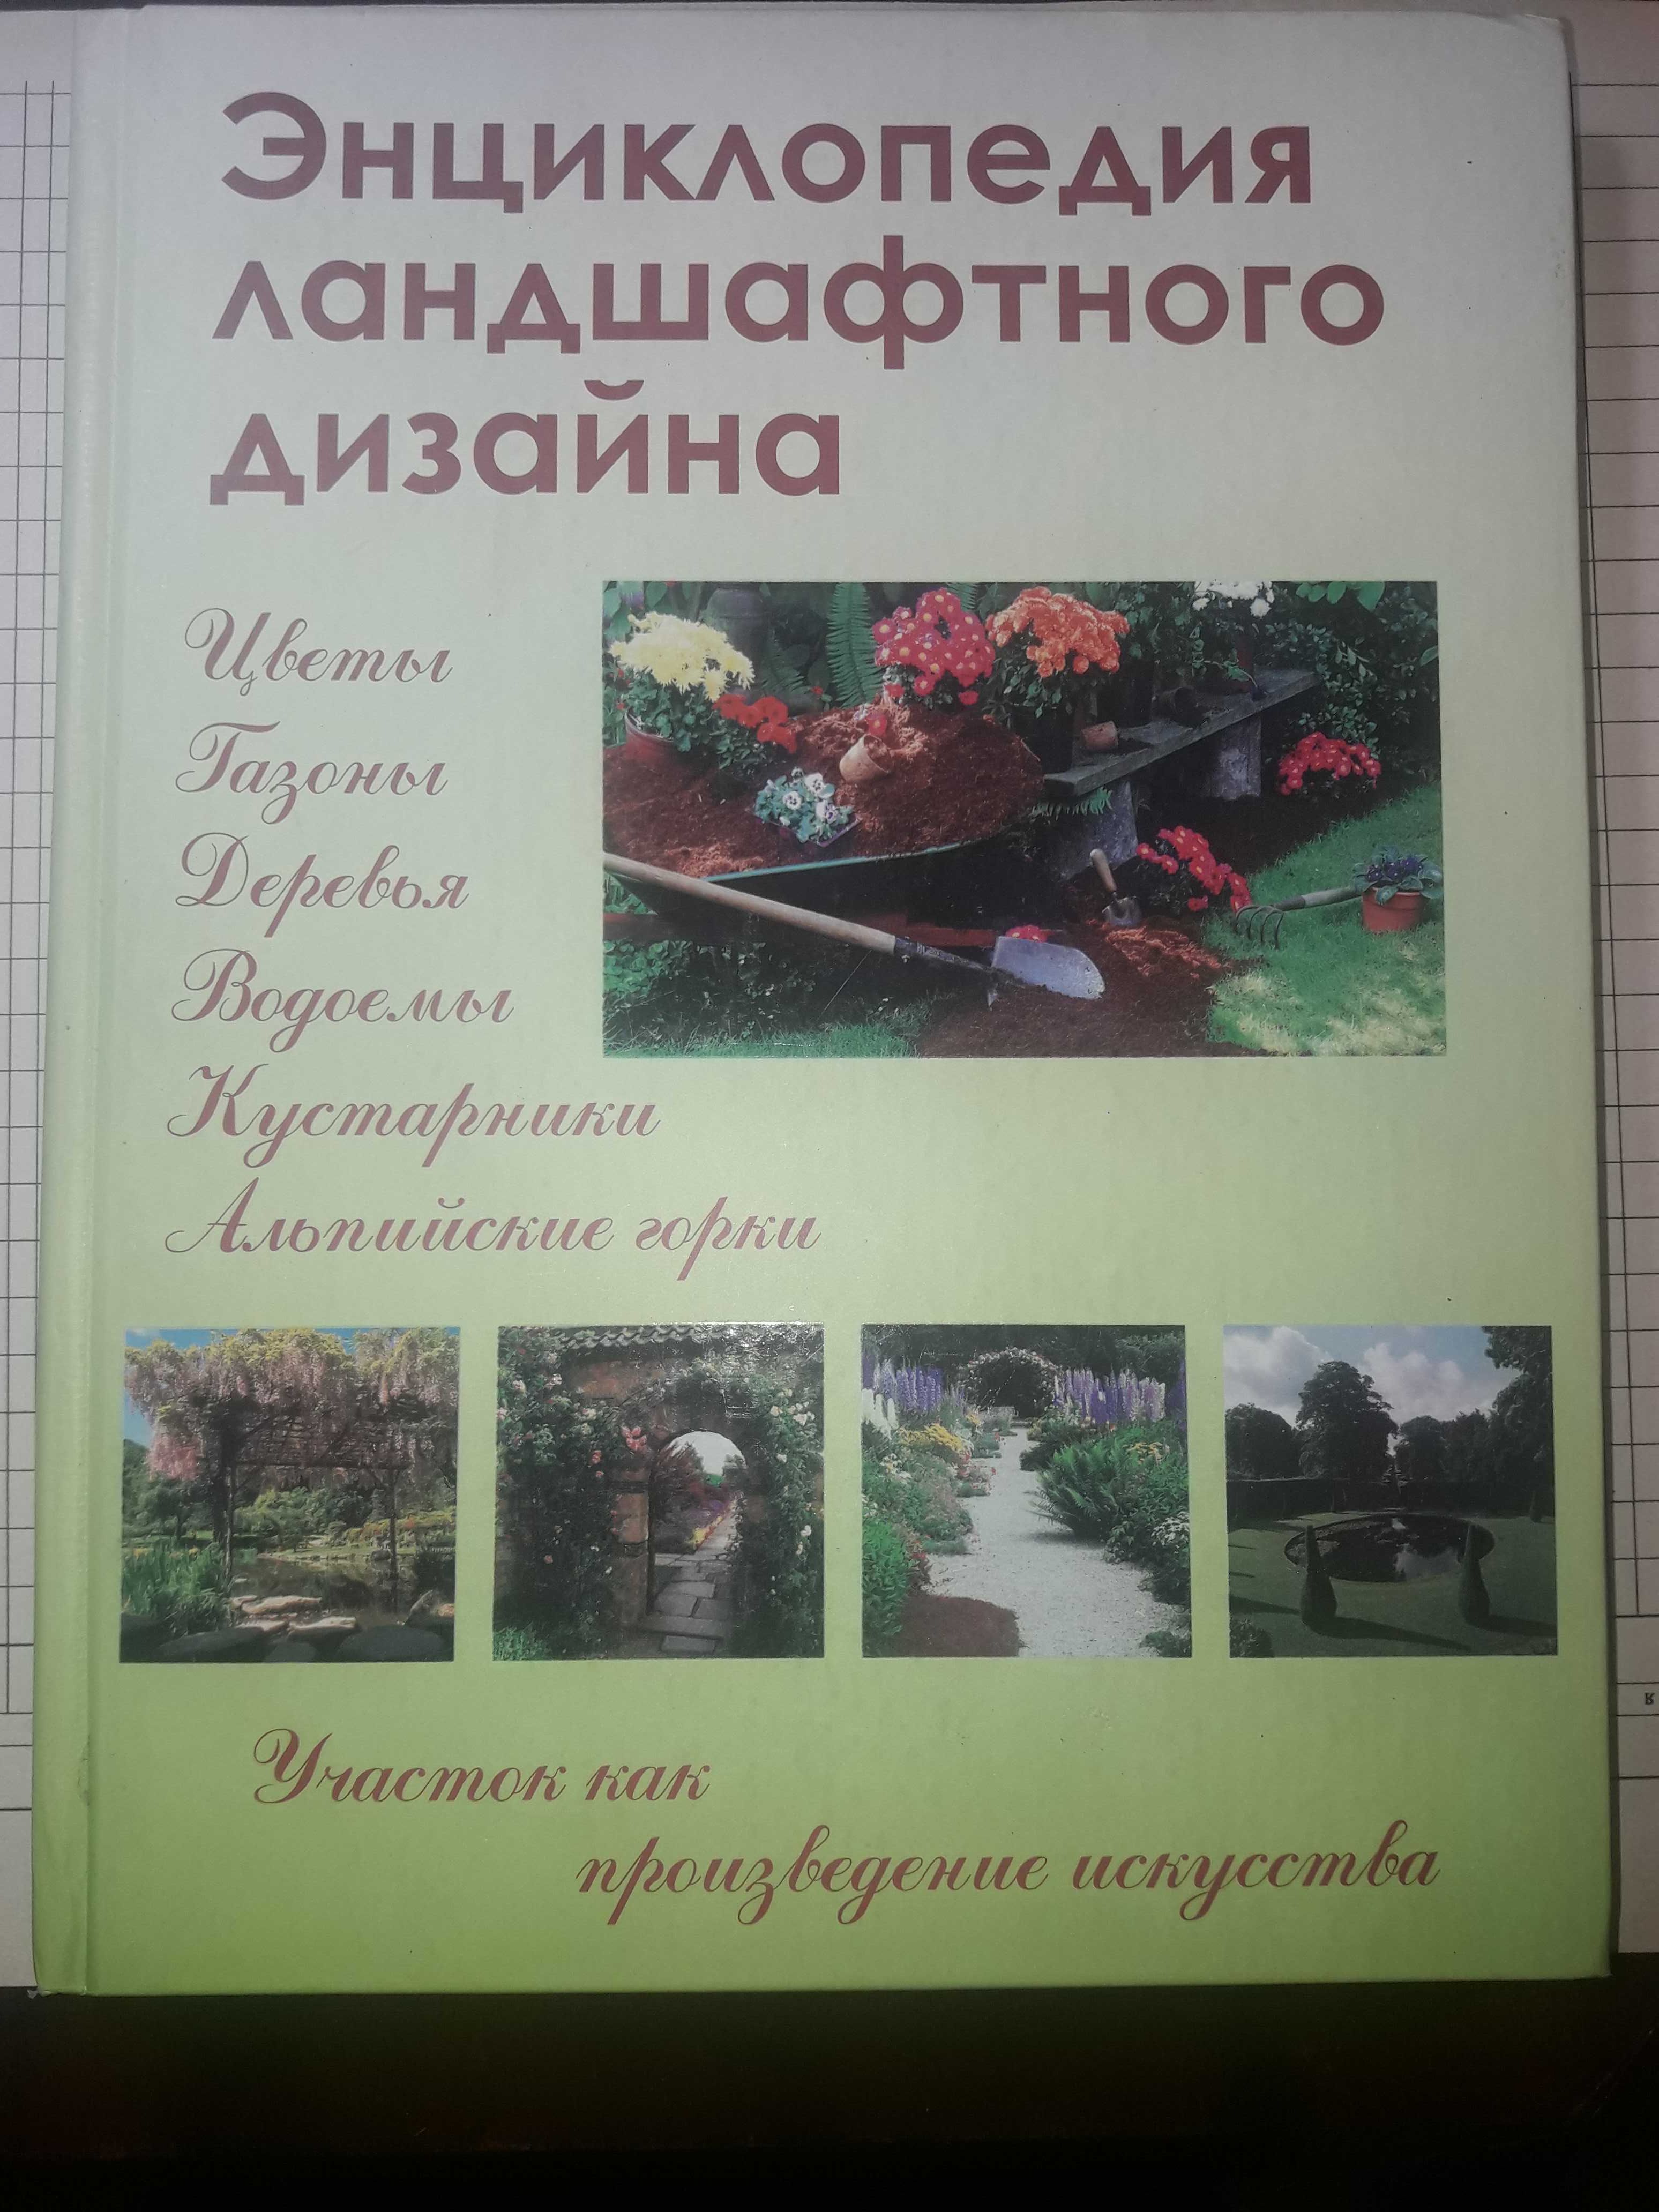 Шешко Энциклопедия ландшафтного дизайна 2007 тир 5000.